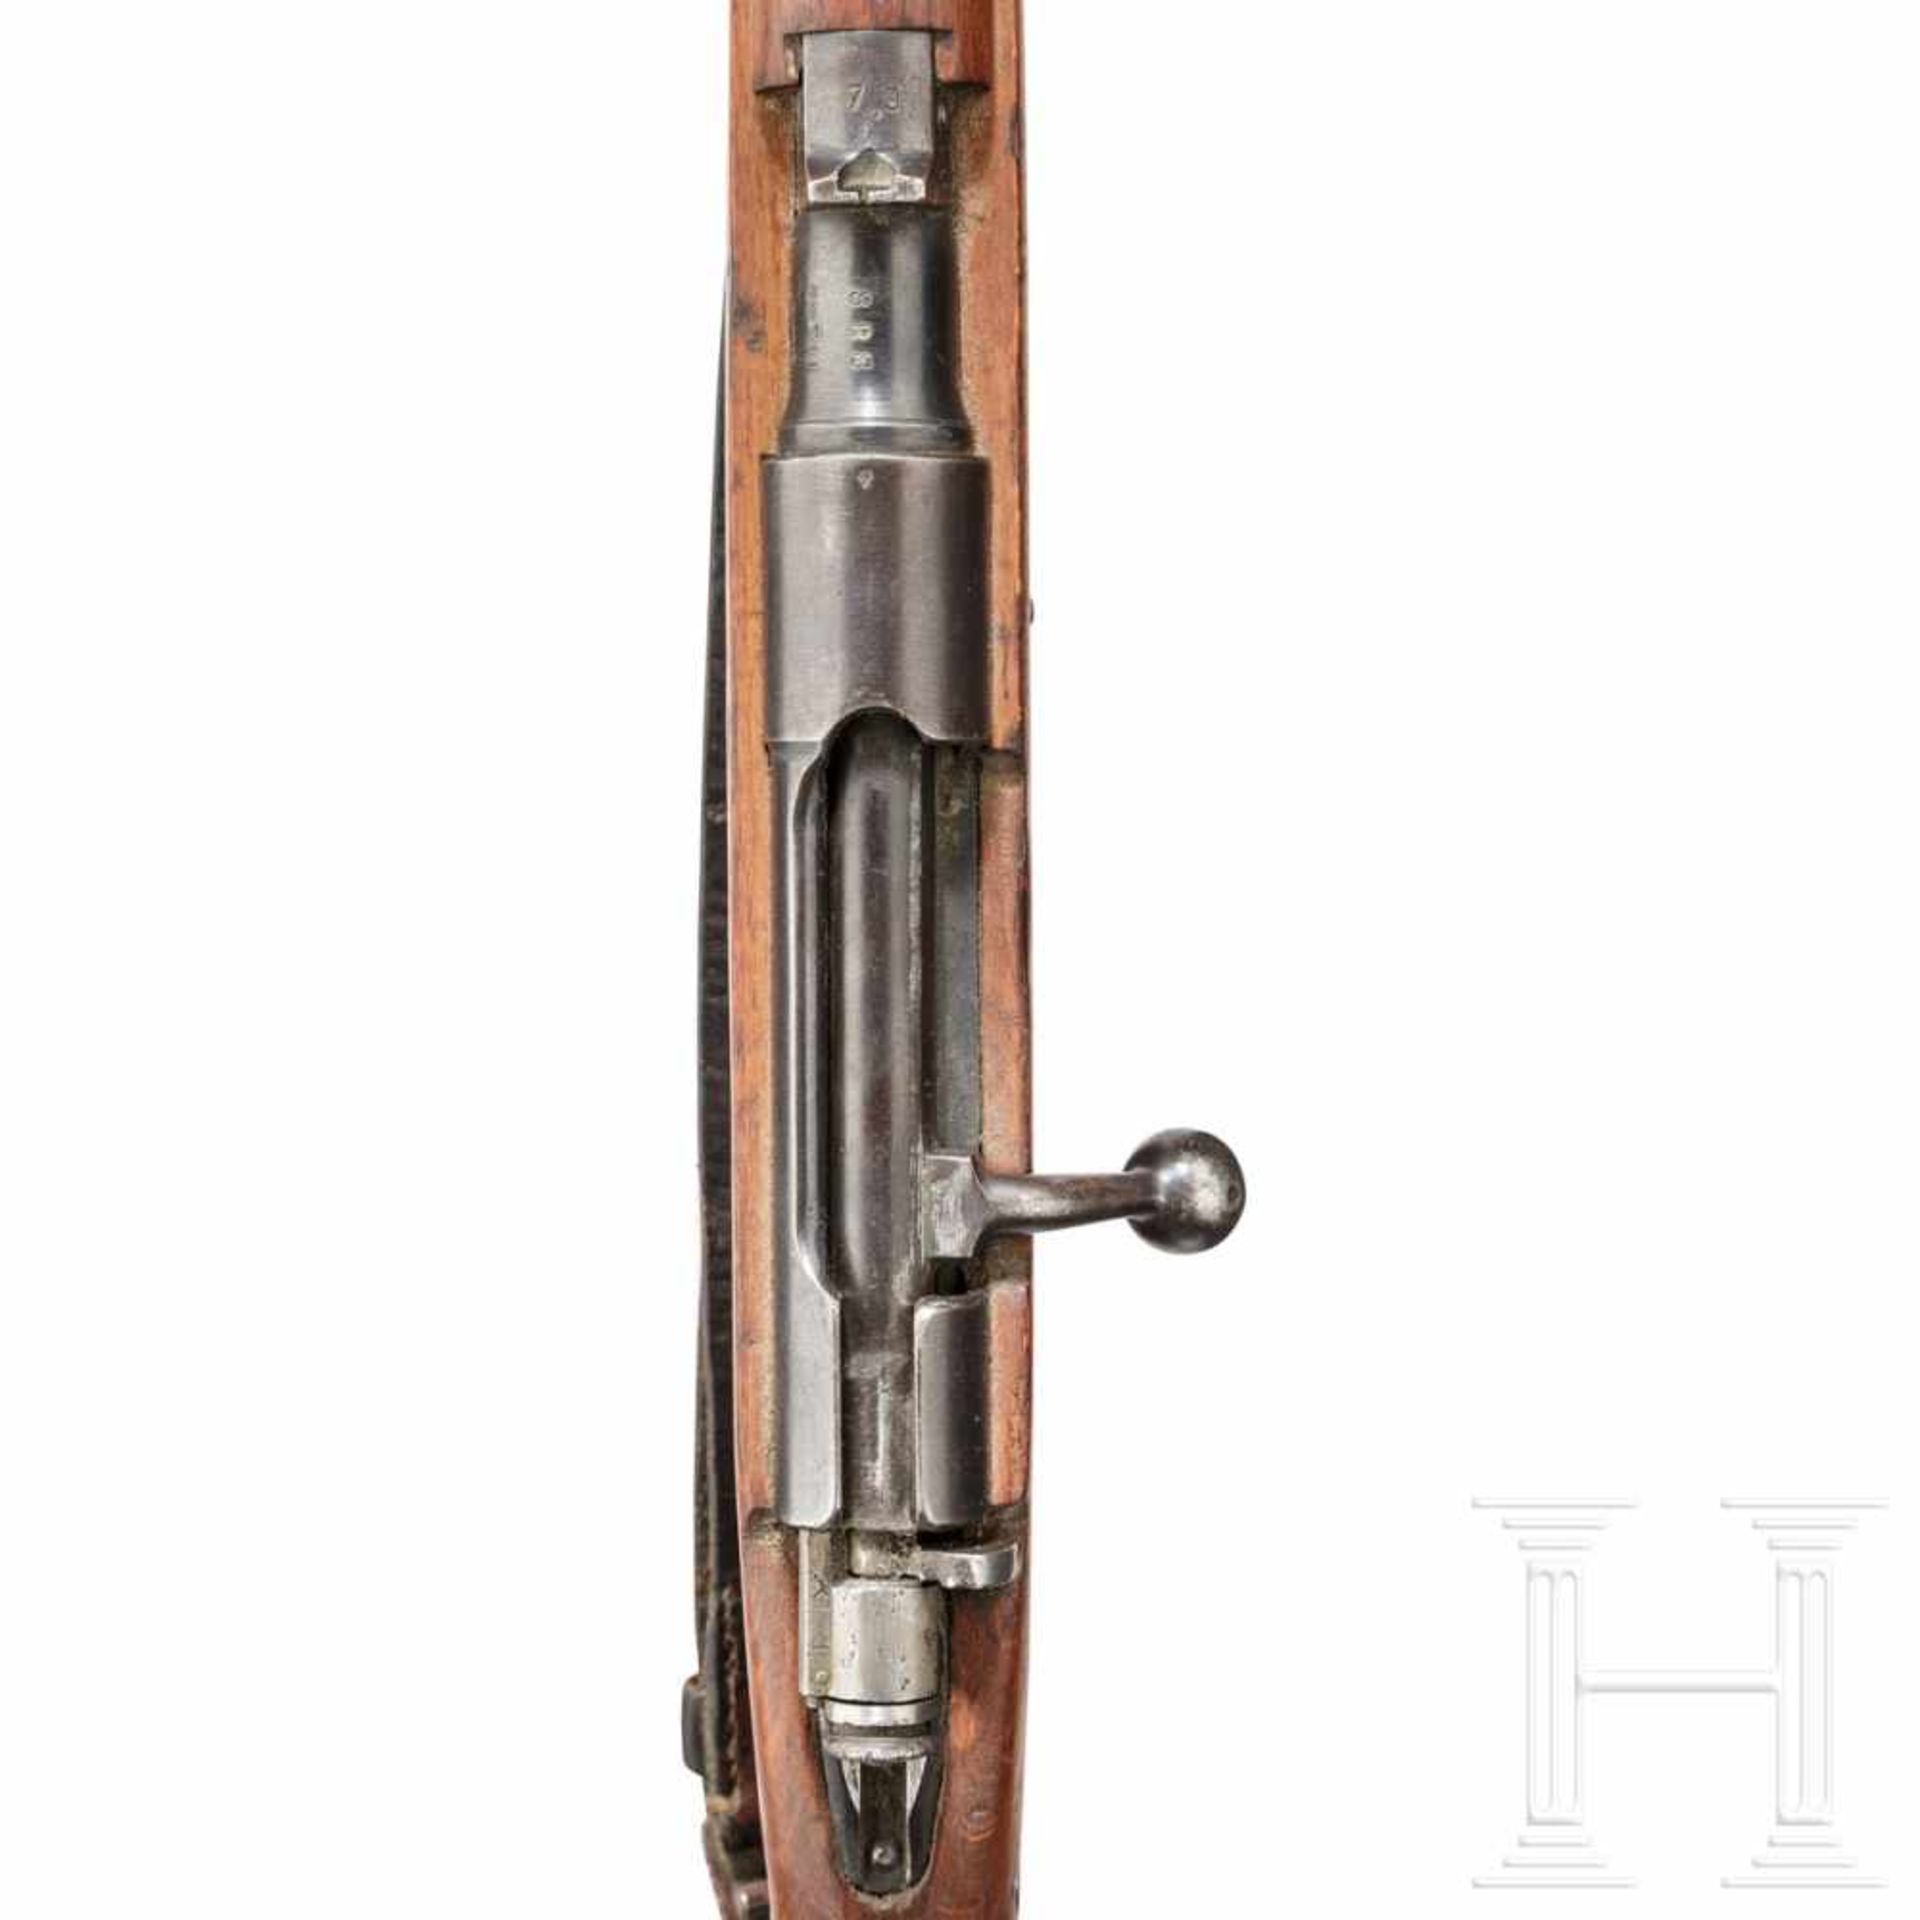 Kurzkarabiner Carcano Mod. 1938 TSKal. 8x57 IS, Nr. 888. Blanker Lauf. Sechsschüssig. Dt. - Bild 3 aus 3